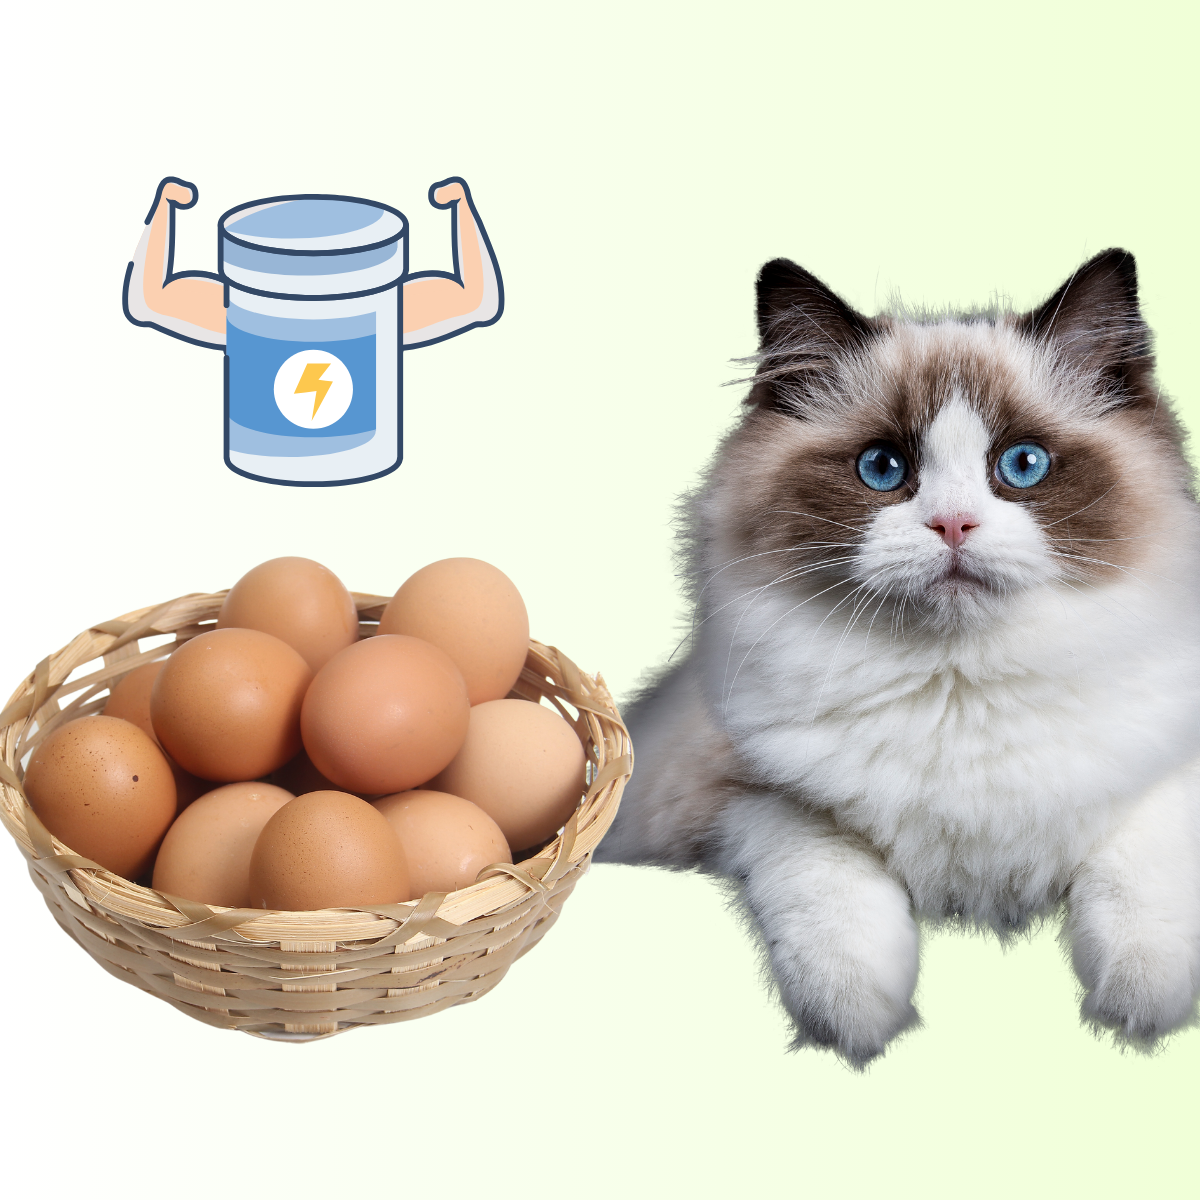 Viele Katzenliebhaber stellen sich die Frage: Darf meine Katze eigentlich Eier essen? In diesem Artikel gehen wir der Frage auf den Grund und beantworten es für euch.